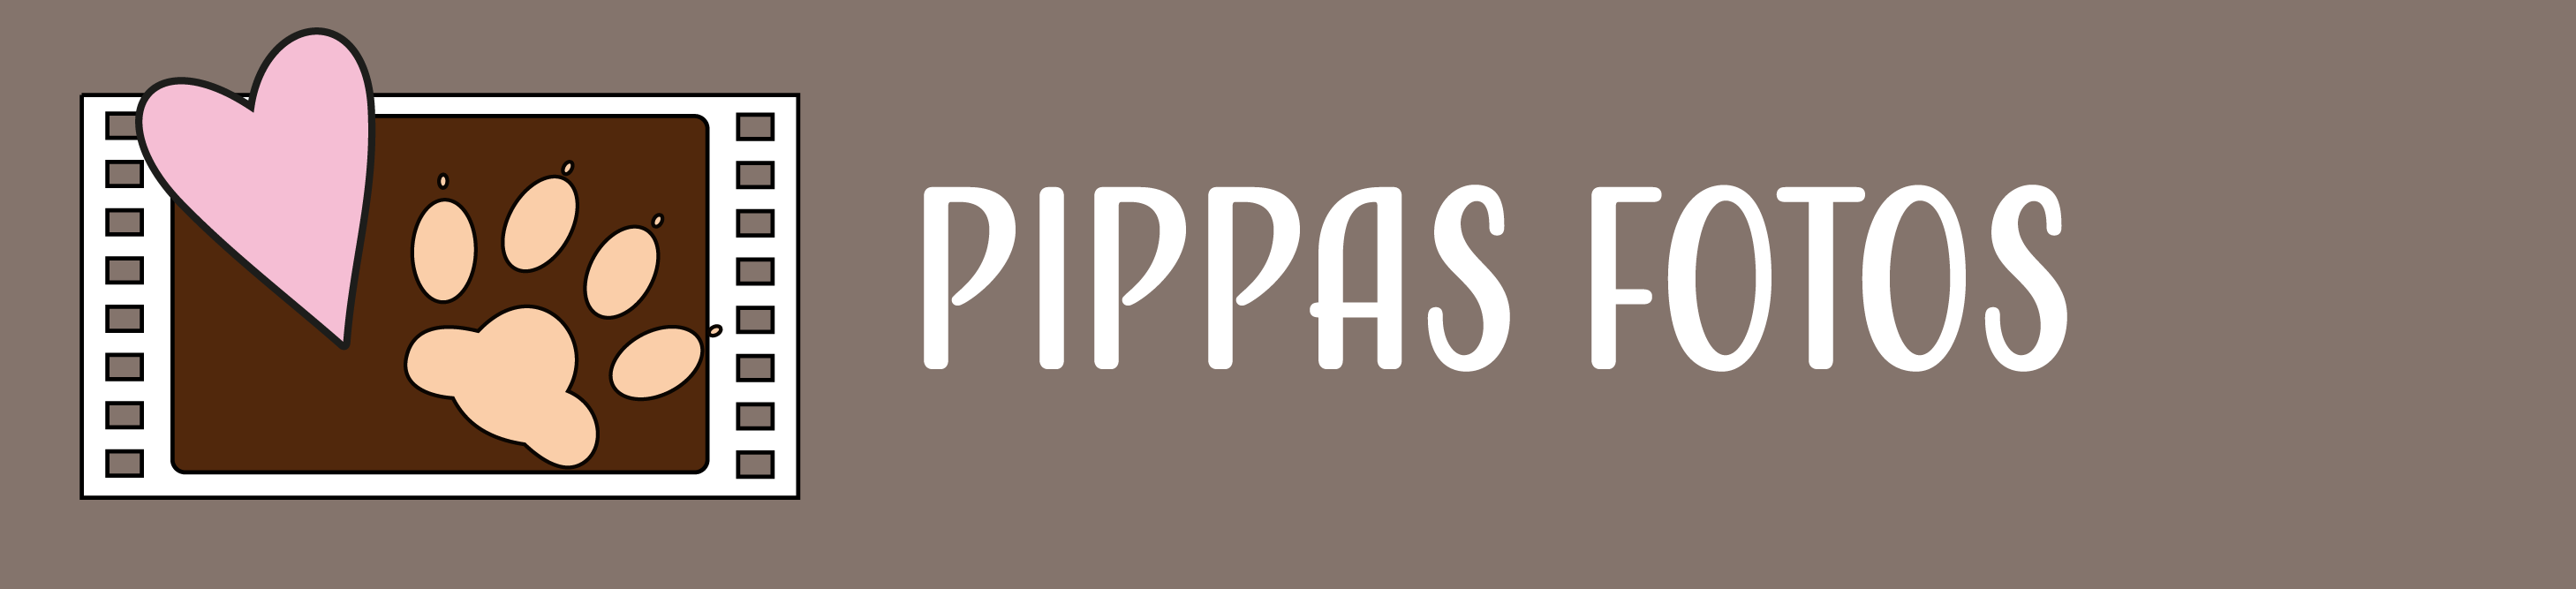 Pippas Fotos